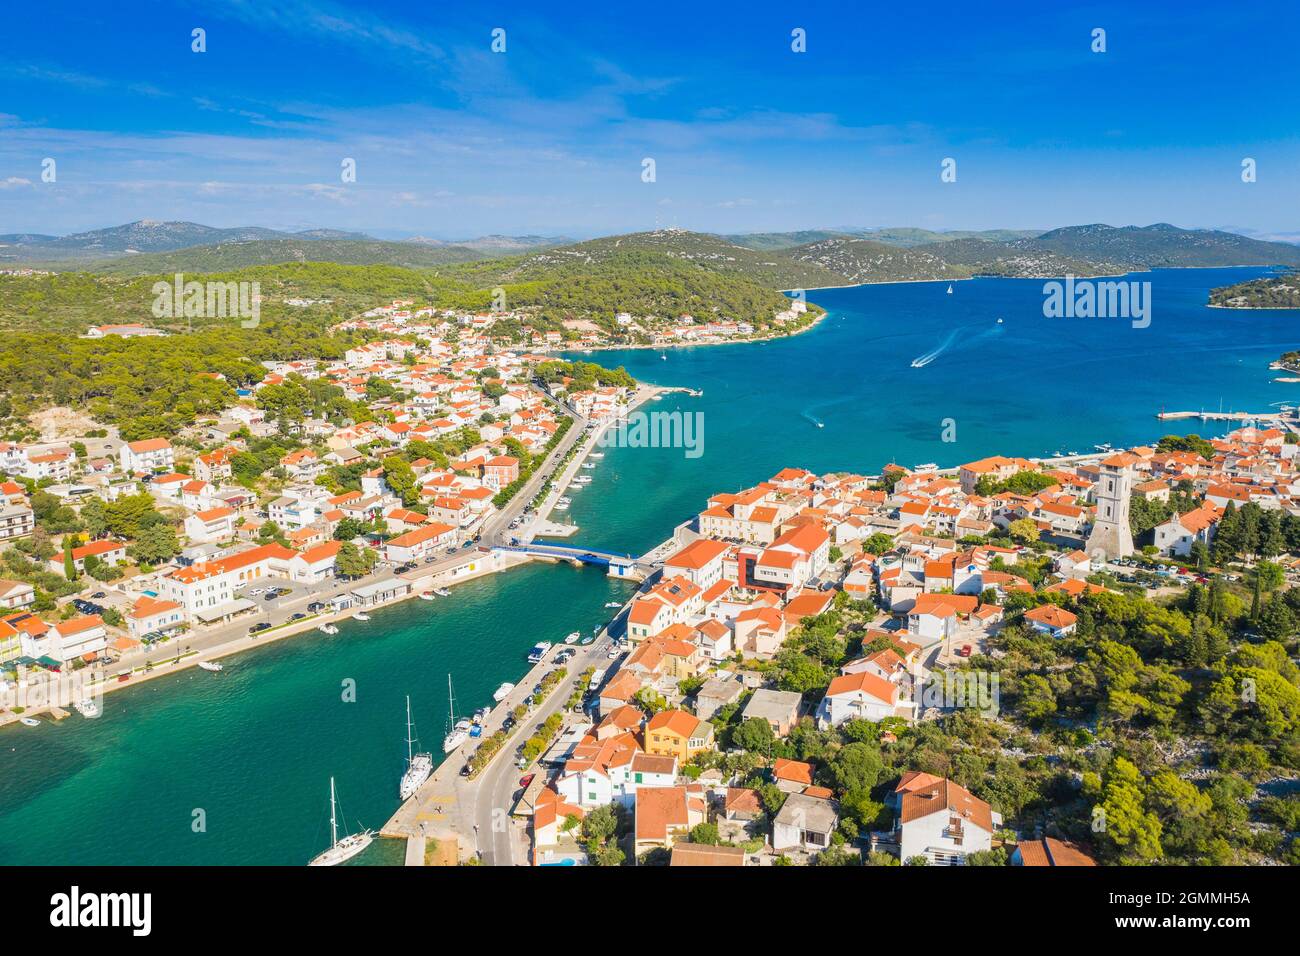 Town of Tisno on Murter, Dalmatia, Croatia Stock Photo